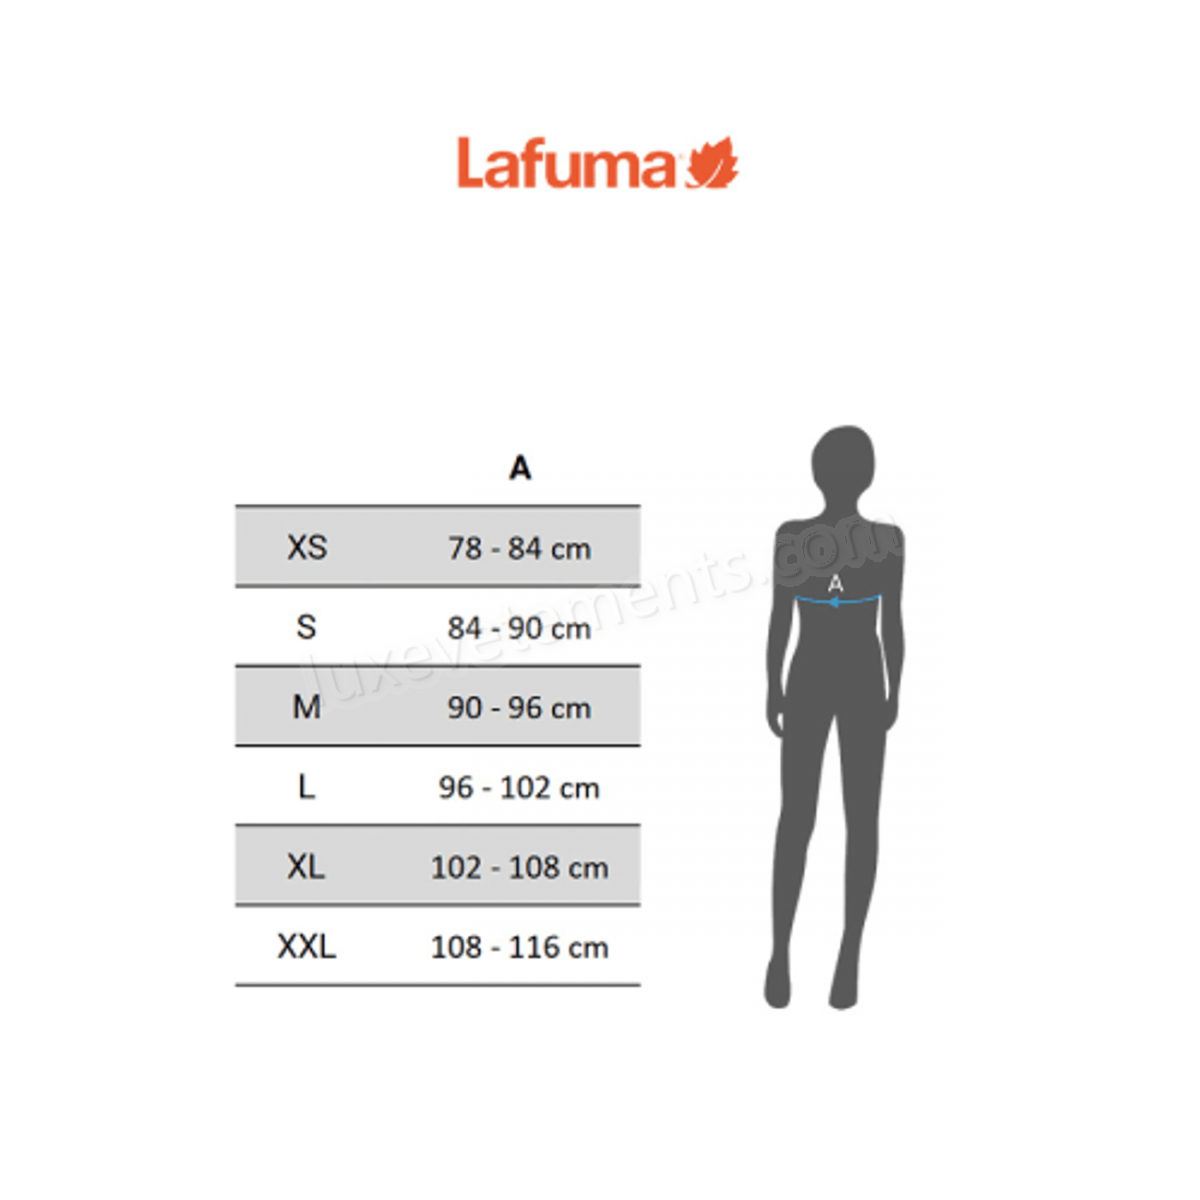 Lafuma-Outdoor femme LAFUMA Lafuma Tech Vente en ligne - -3